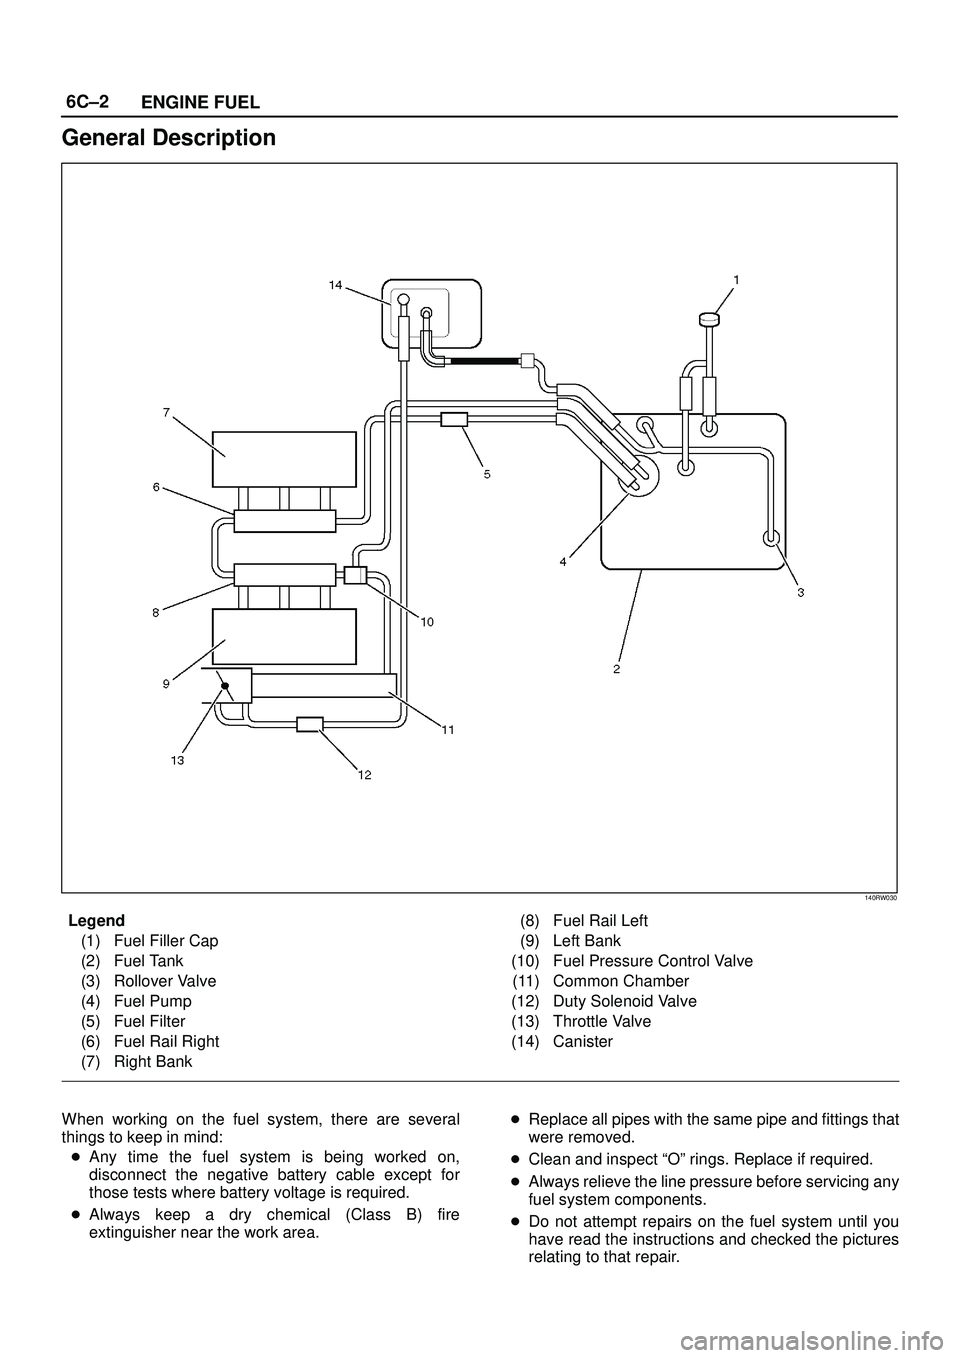 ISUZU TROOPER 1998  Service Repair Manual 6C±2
ENGINE FUEL
General Description
140RW030
Legend
(1) Fuel Filler Cap
(2) Fuel Tank
(3) Rollover Valve
(4) Fuel Pump
(5) Fuel Filter
(6) Fuel Rail Right
(7) Right Bank(8) Fuel Rail Left
(9) Left B